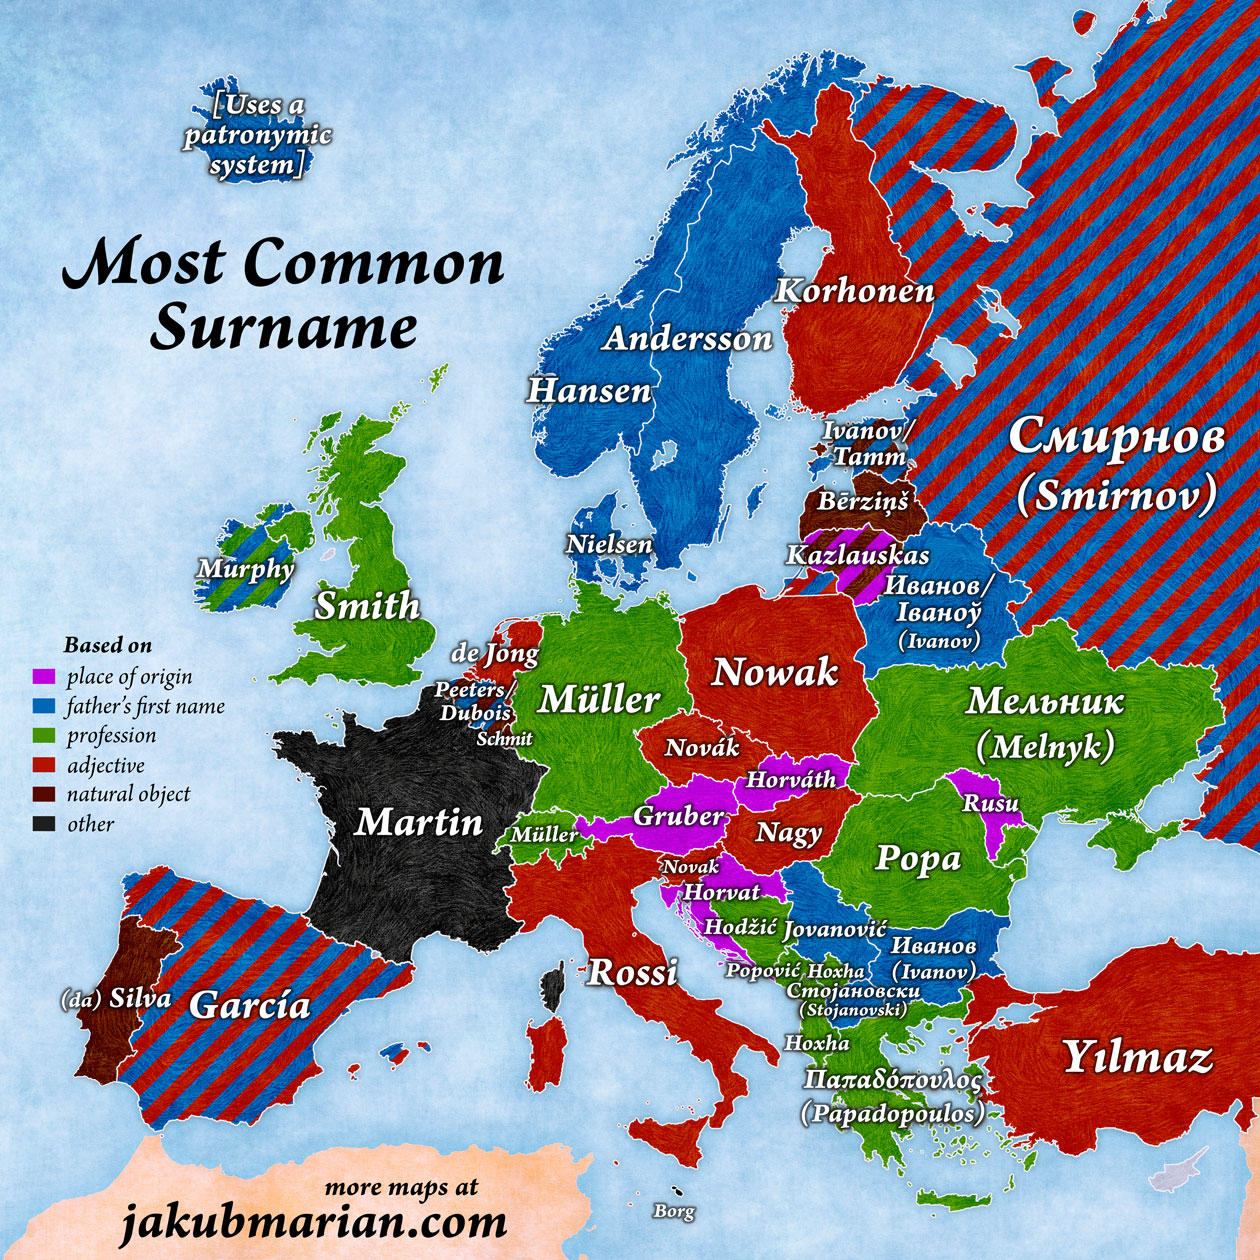 Najpopularniejsze nazwisko w Europie